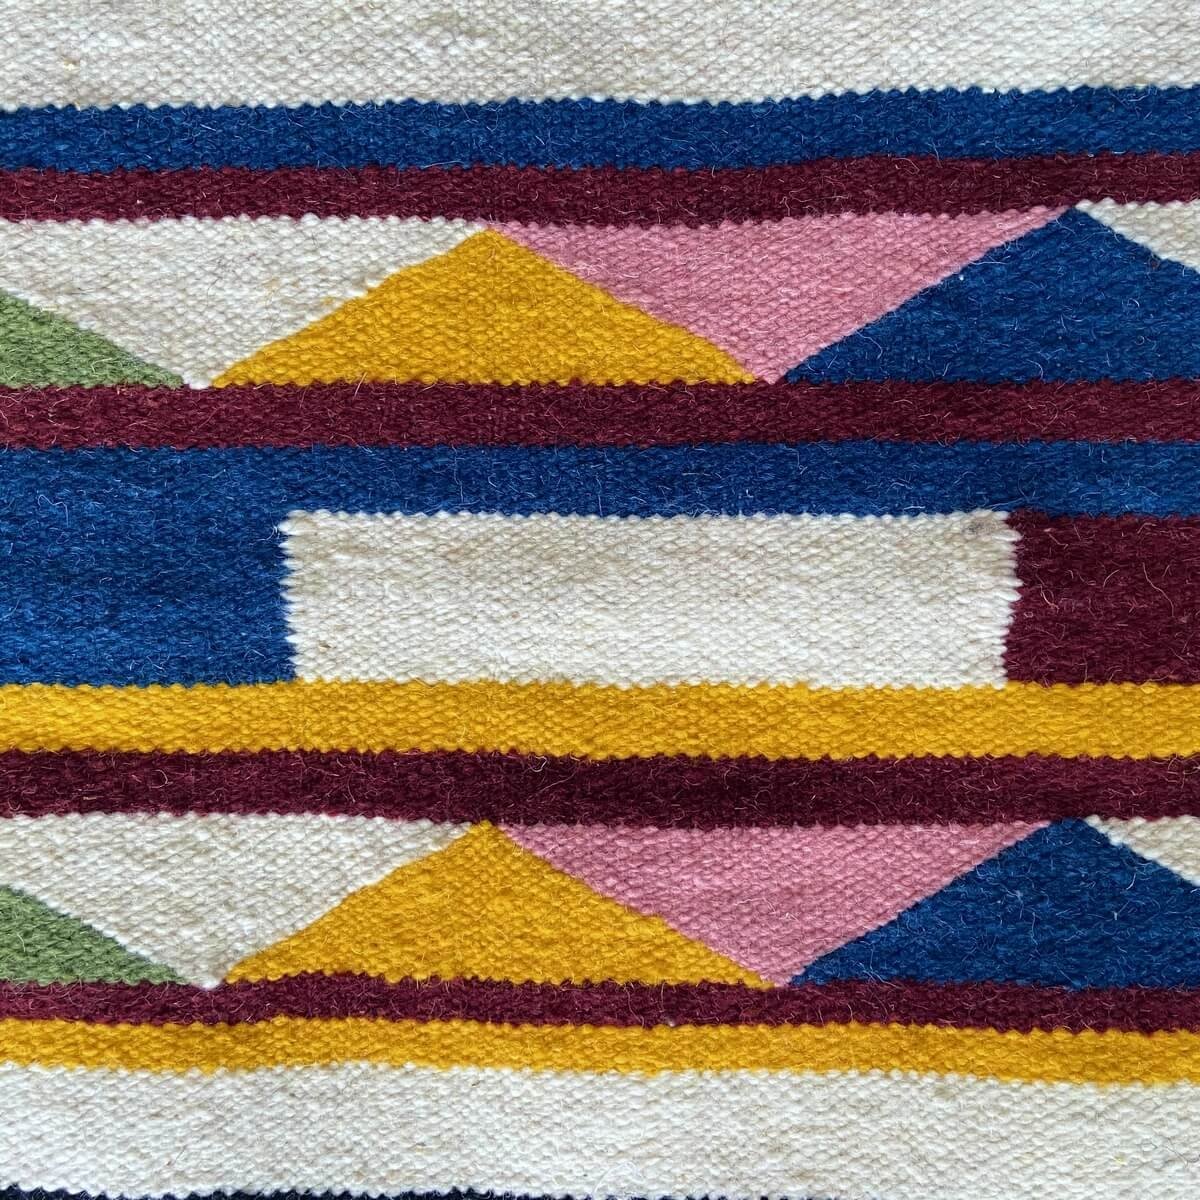 Tapete berbere Tapete Kilim Orti 65x95 Multicor (Tecidos à mão, Lã, Tunísia) Tapete tunisiano kilim, estilo marroquino. Tapete r